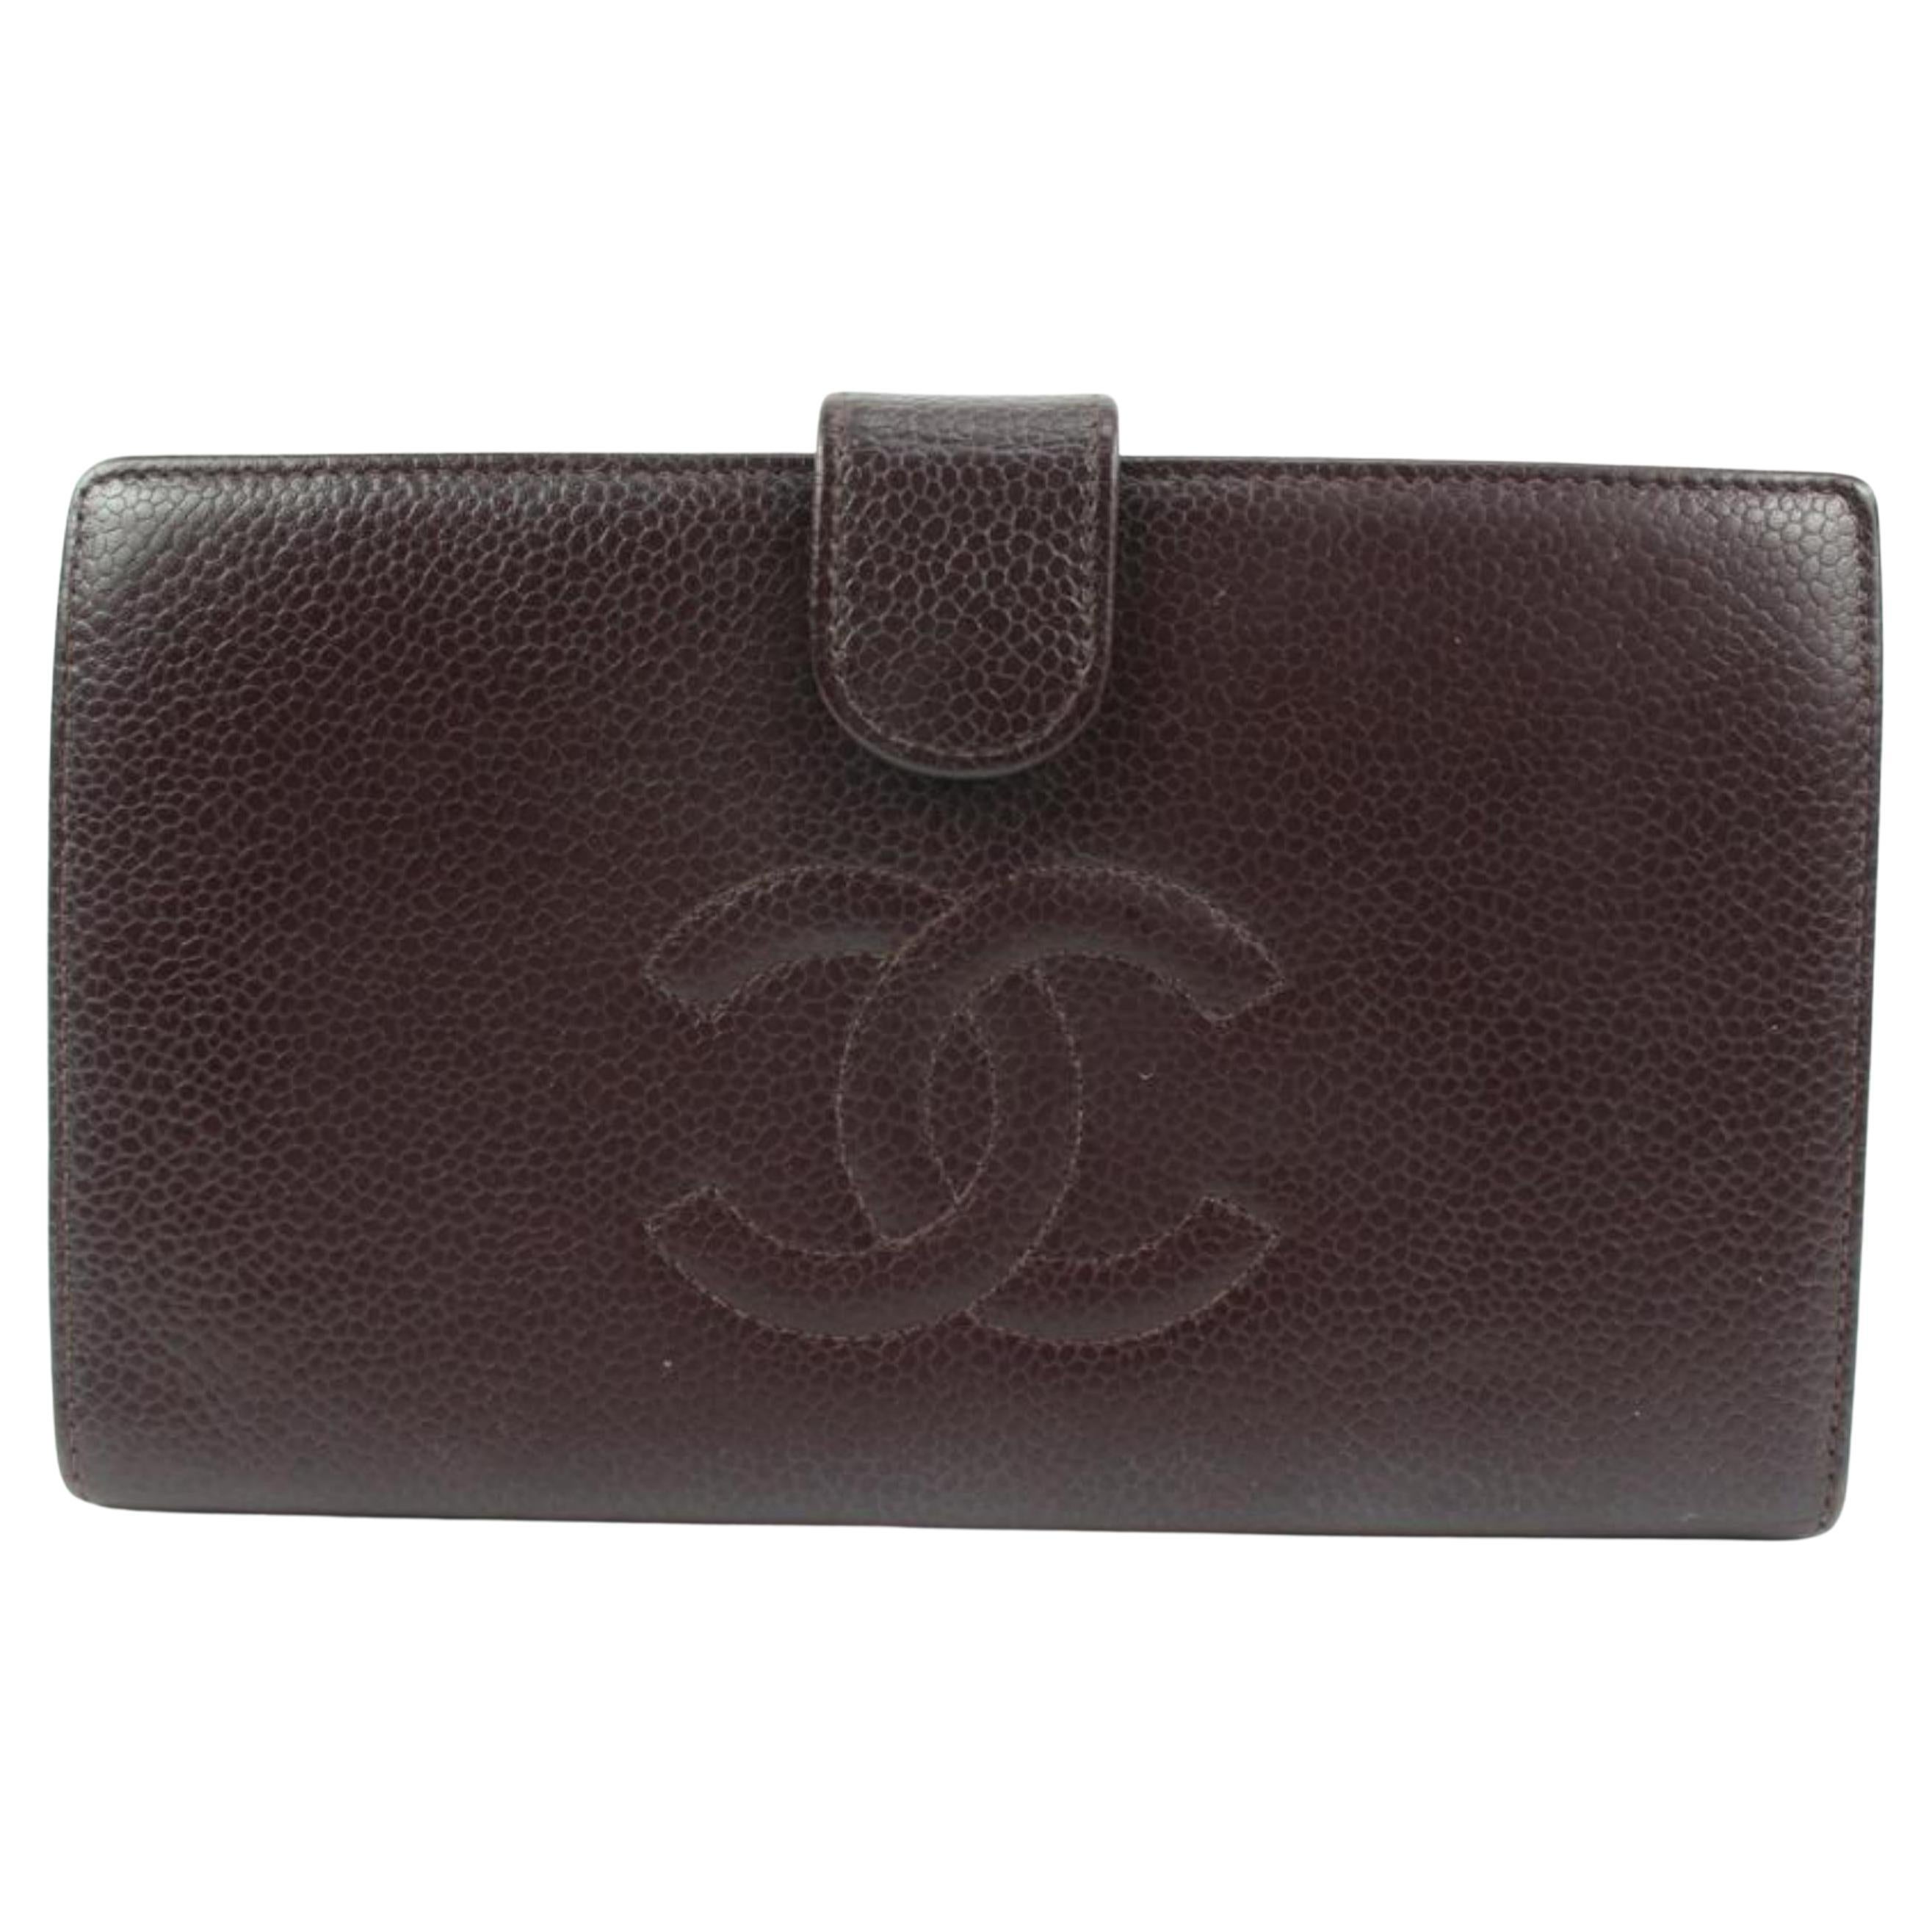 Chanel Bordeaux Caviar Leather CC Logo Long Bifold Flap Wallet 42ck224s For Sale